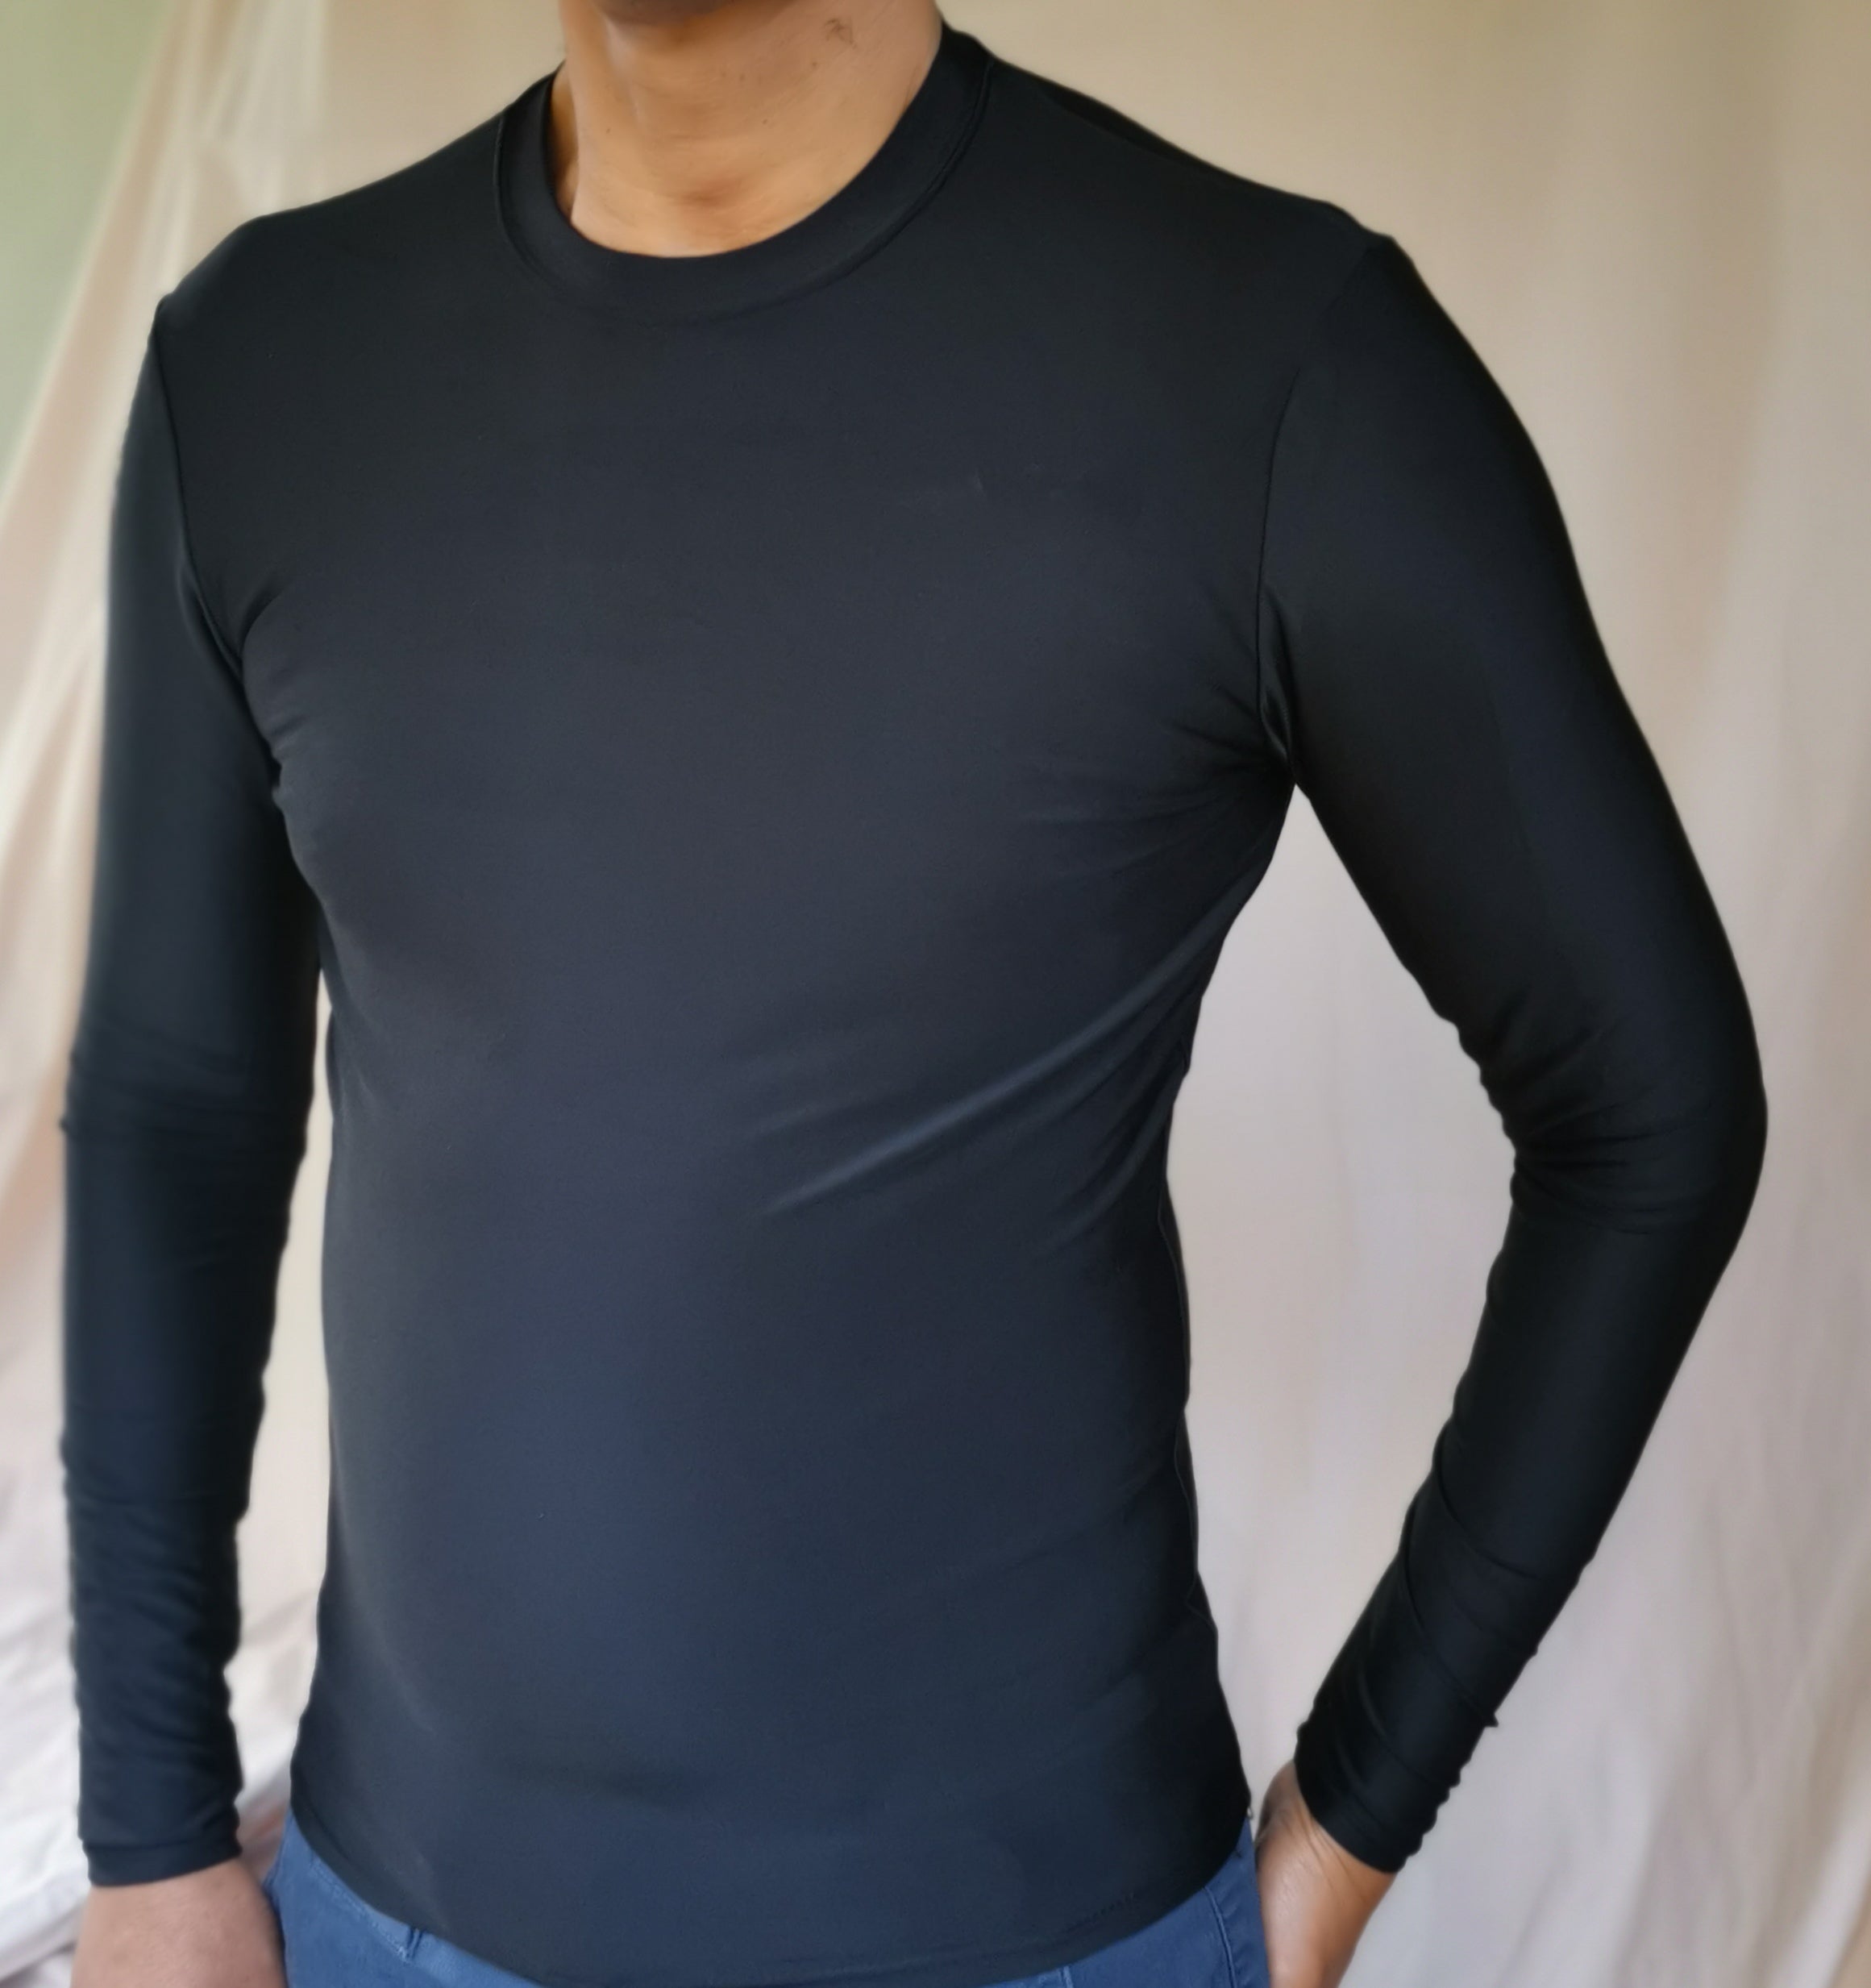 235 UV Protective Body Vest - 4 Swim or Sports